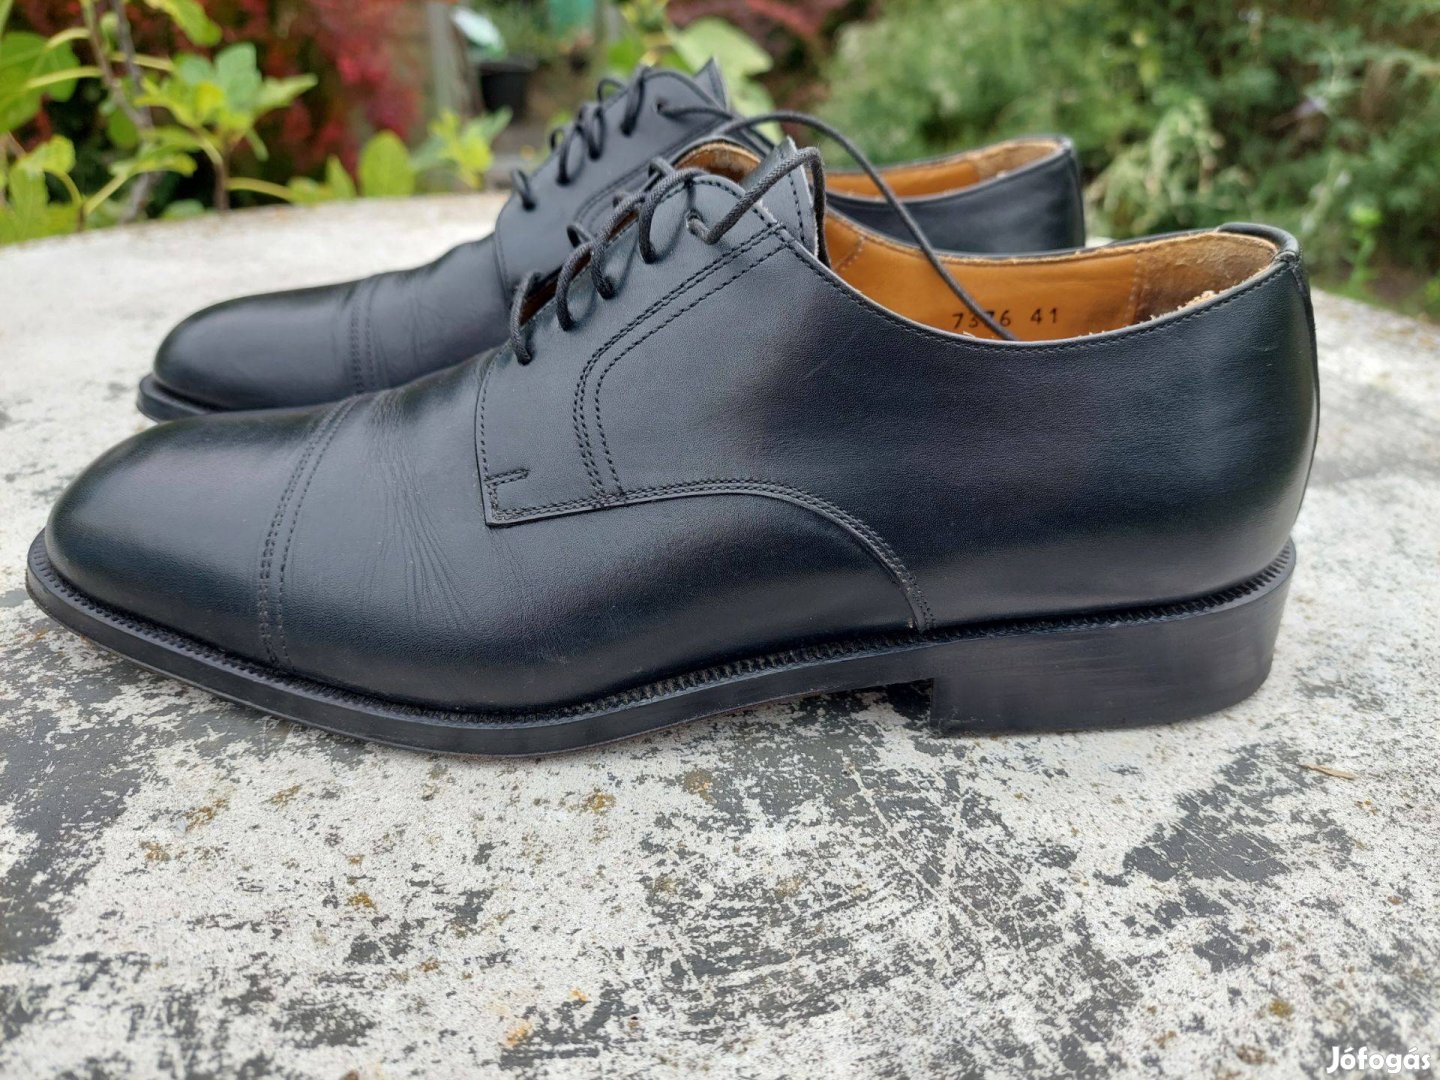 Magnanni fekete bőr cipő, EU41, 26 cm